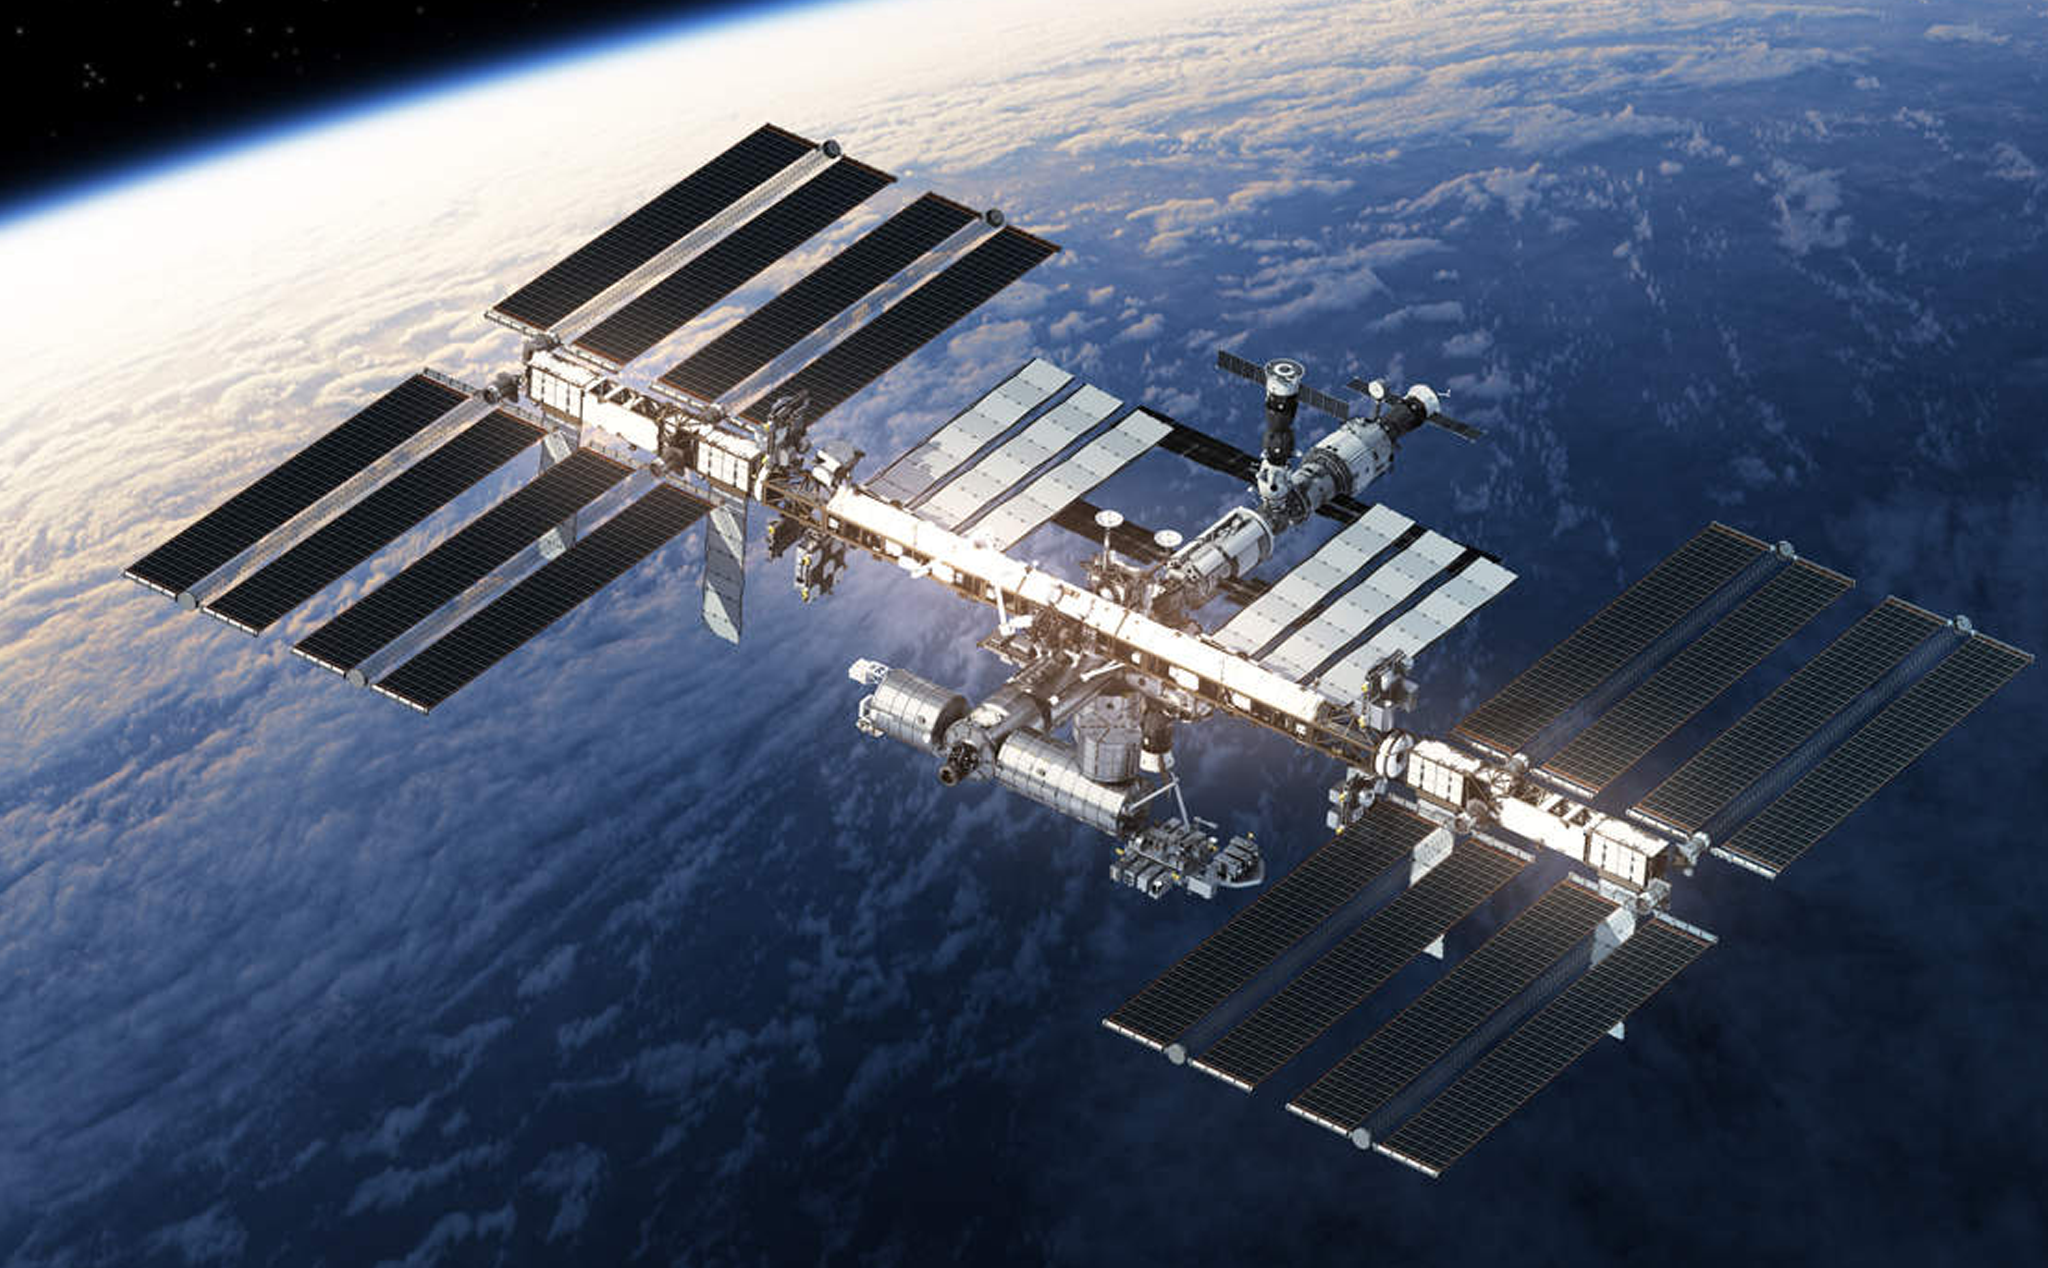 Trạm không gian ISS là nơi các nhà khoa học trên toàn thế giới hợp tác phát triển các dự án nghiên cứu không gian. Bạn sẽ được khám phá không gian vô tận, tìm hiểu về các thử nghiệm khoa học đang diễn ra, và đẩy mạnh sự tò mò của bạn. Hãy xem hình ảnh và bay vào không gian.